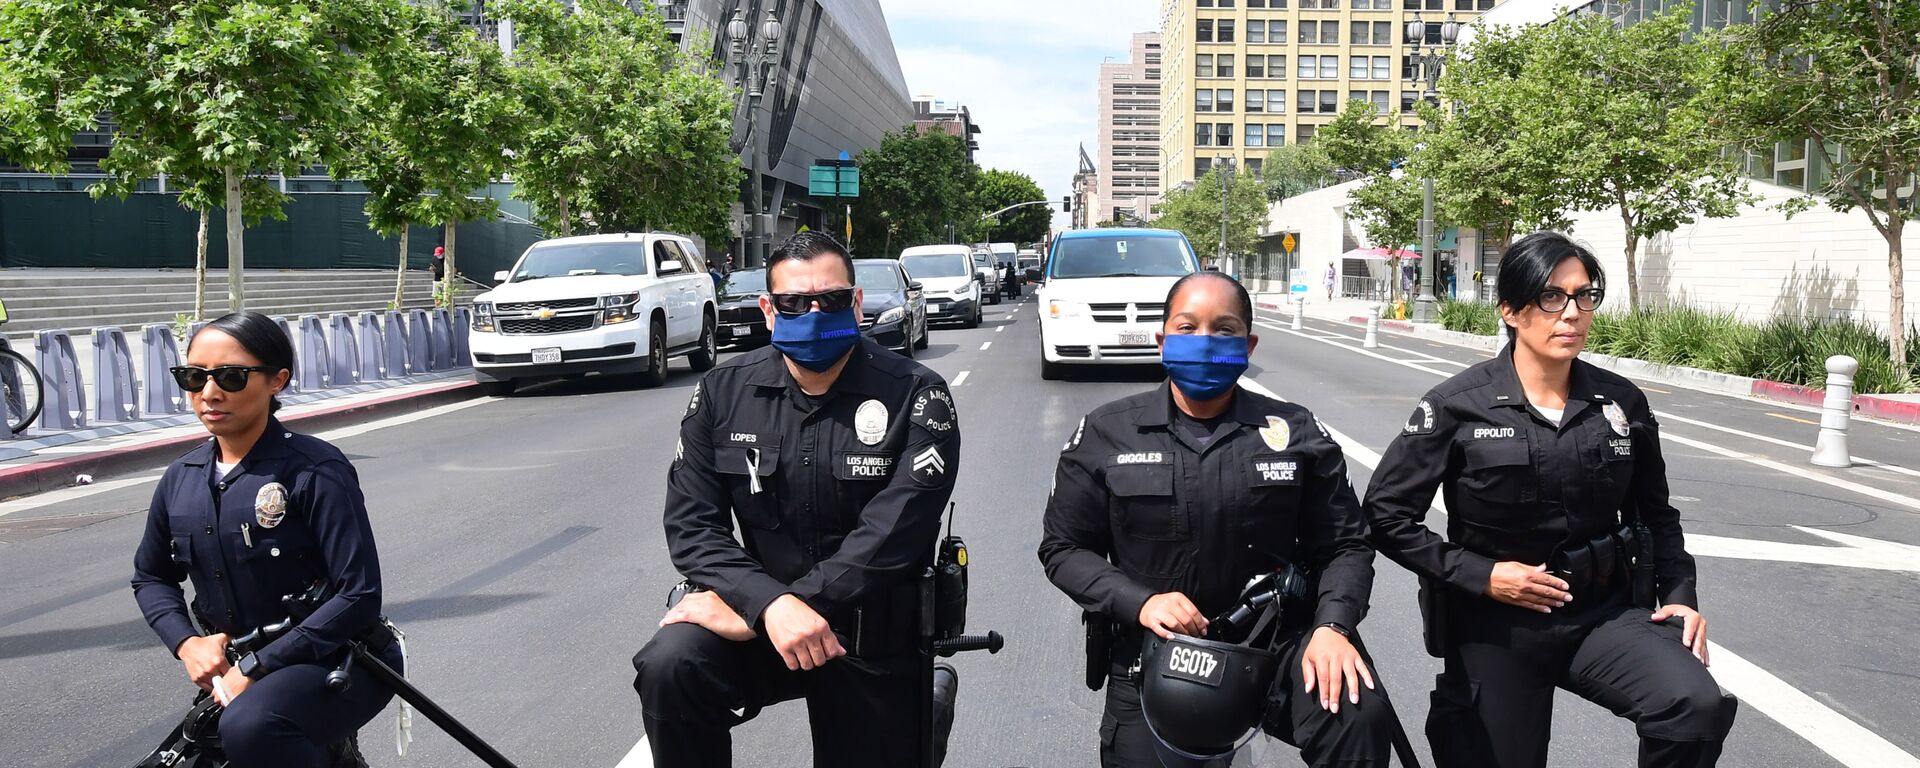 احتجاجات جورج فلويد - عناصر الشرطة الأمريكية يقفون على ركبة واحدة في إطار التضامن مع المتظاهرين في لوس أنجلوس، الولايات المتحدة 2 يونيو 2020 - سبوتنيك عربي, 1920, 05.06.2020